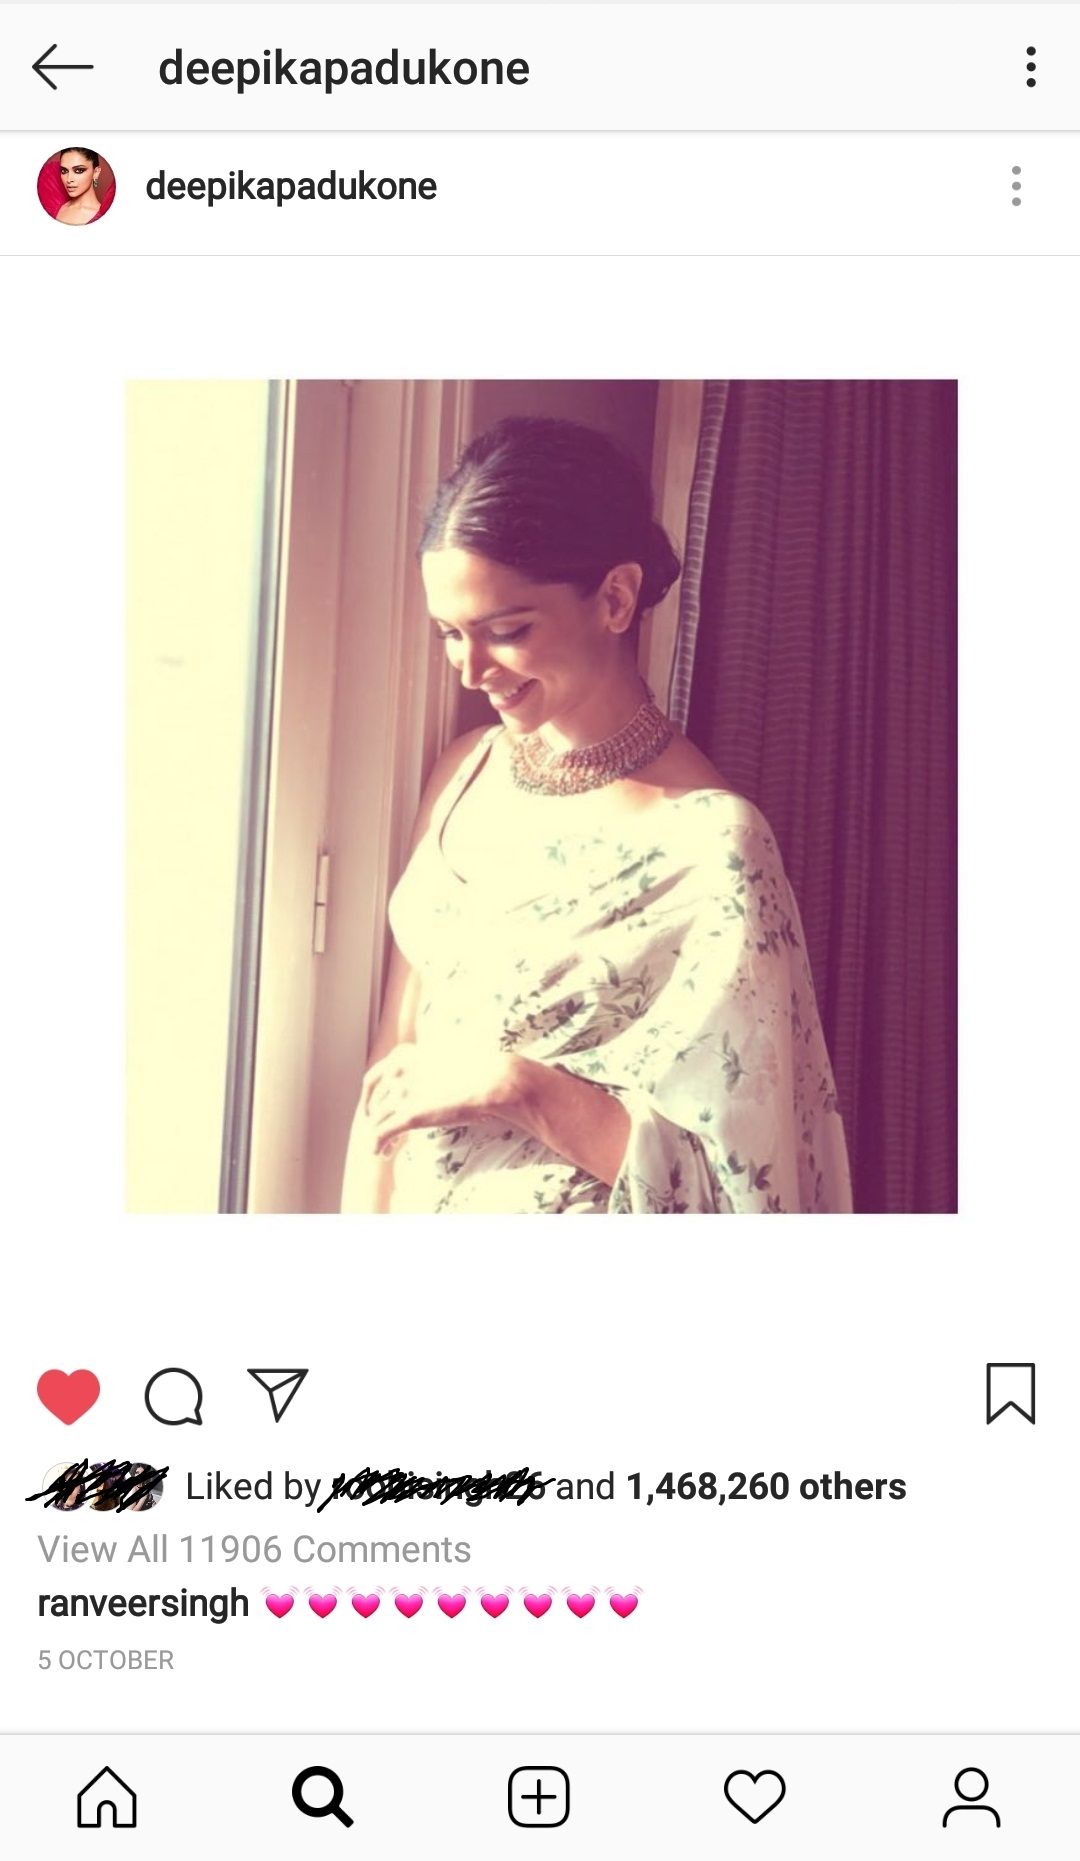 Ranveer Singh's comment on Deepika's Instagram post